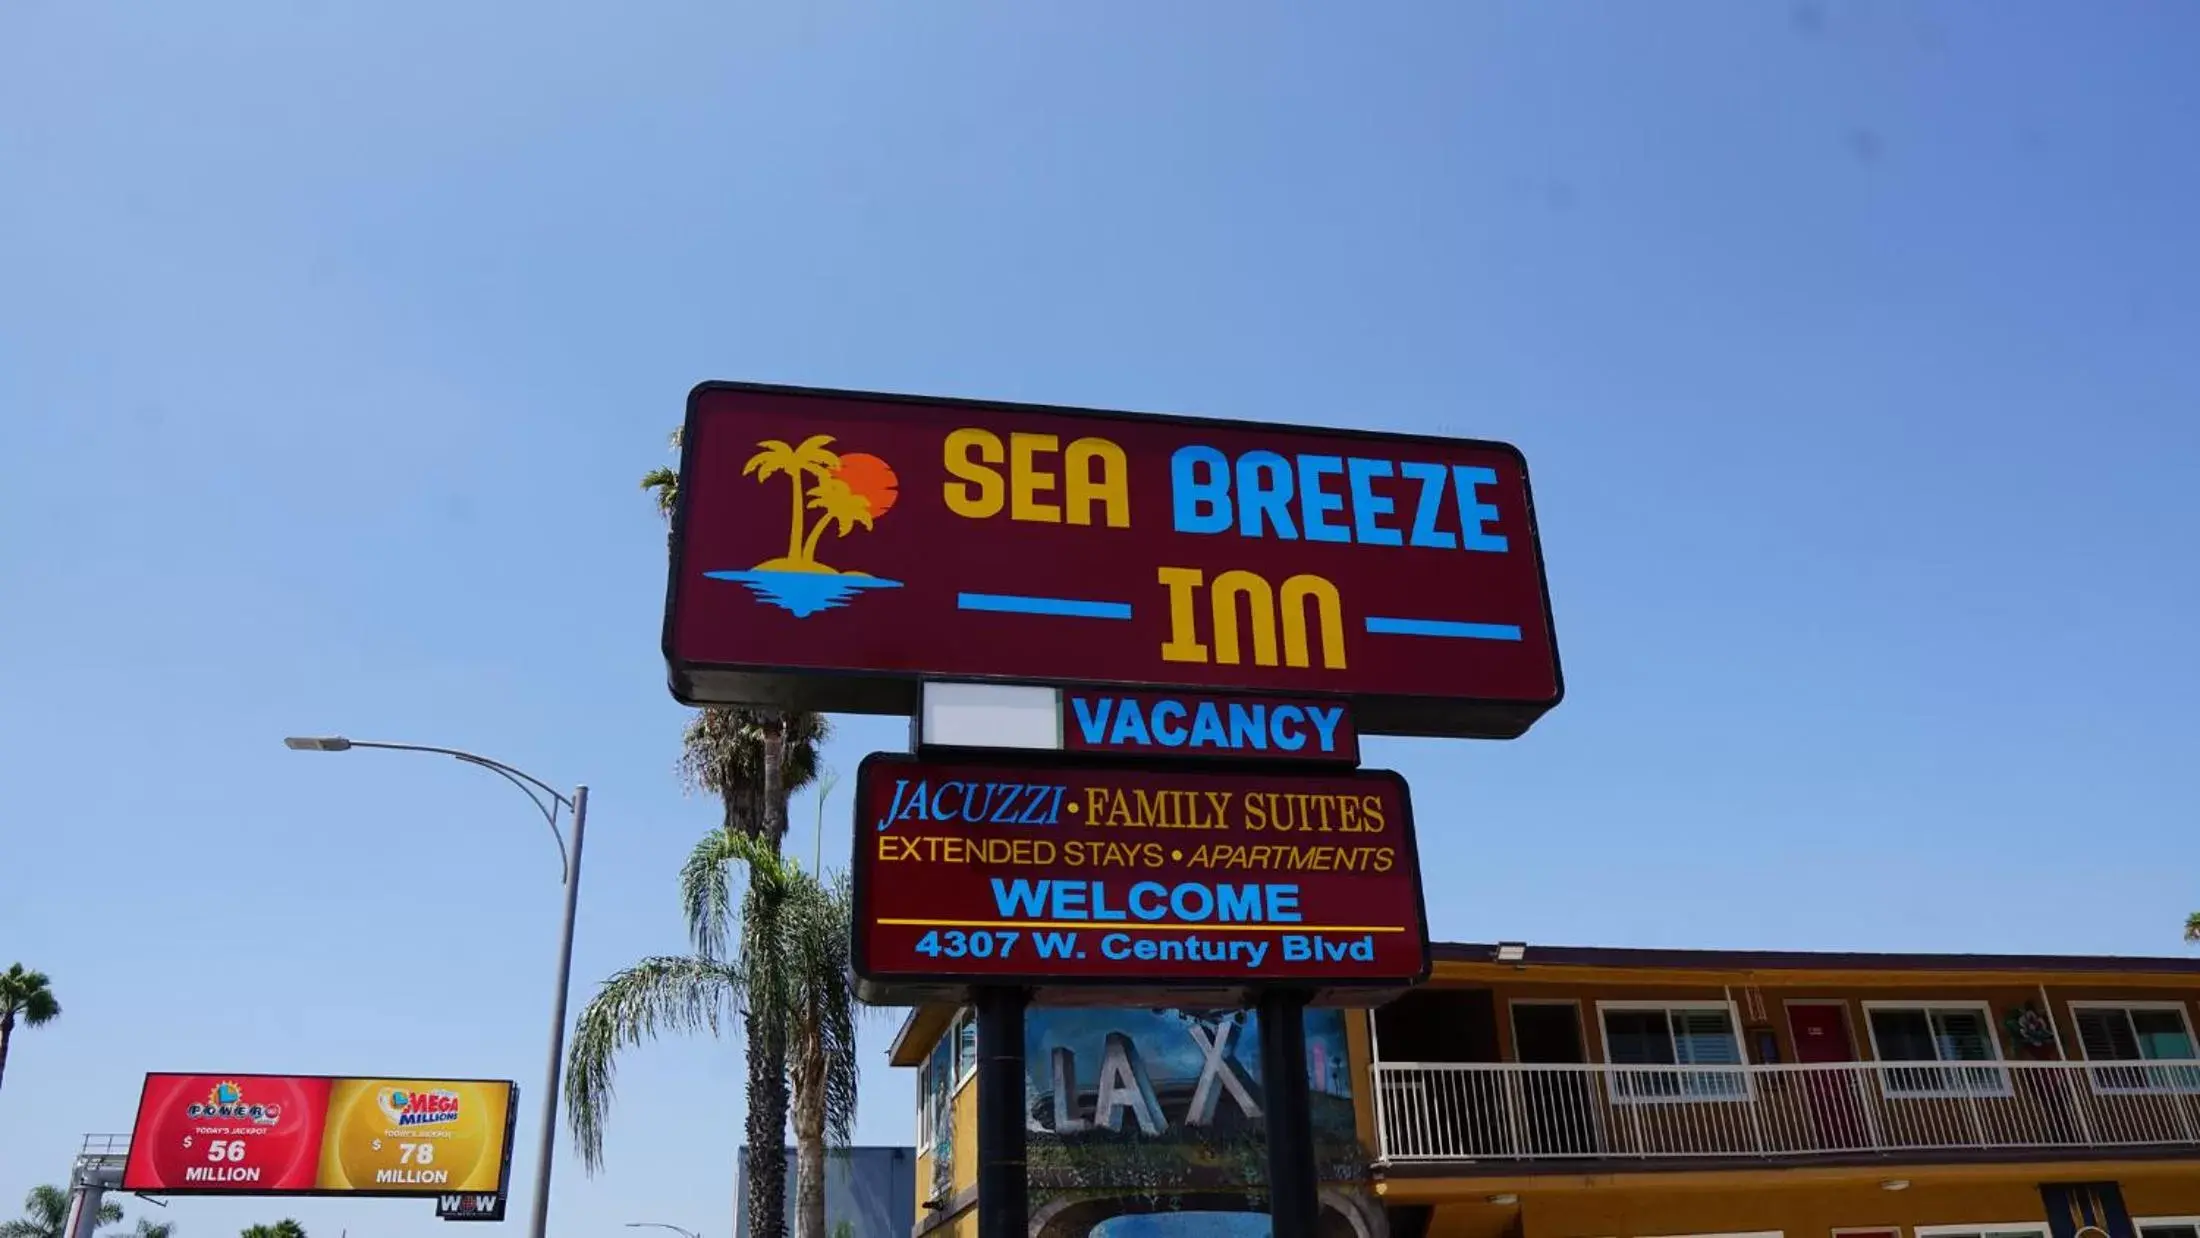 Sea Breeze Inn - LAX Airport, Los Angeles